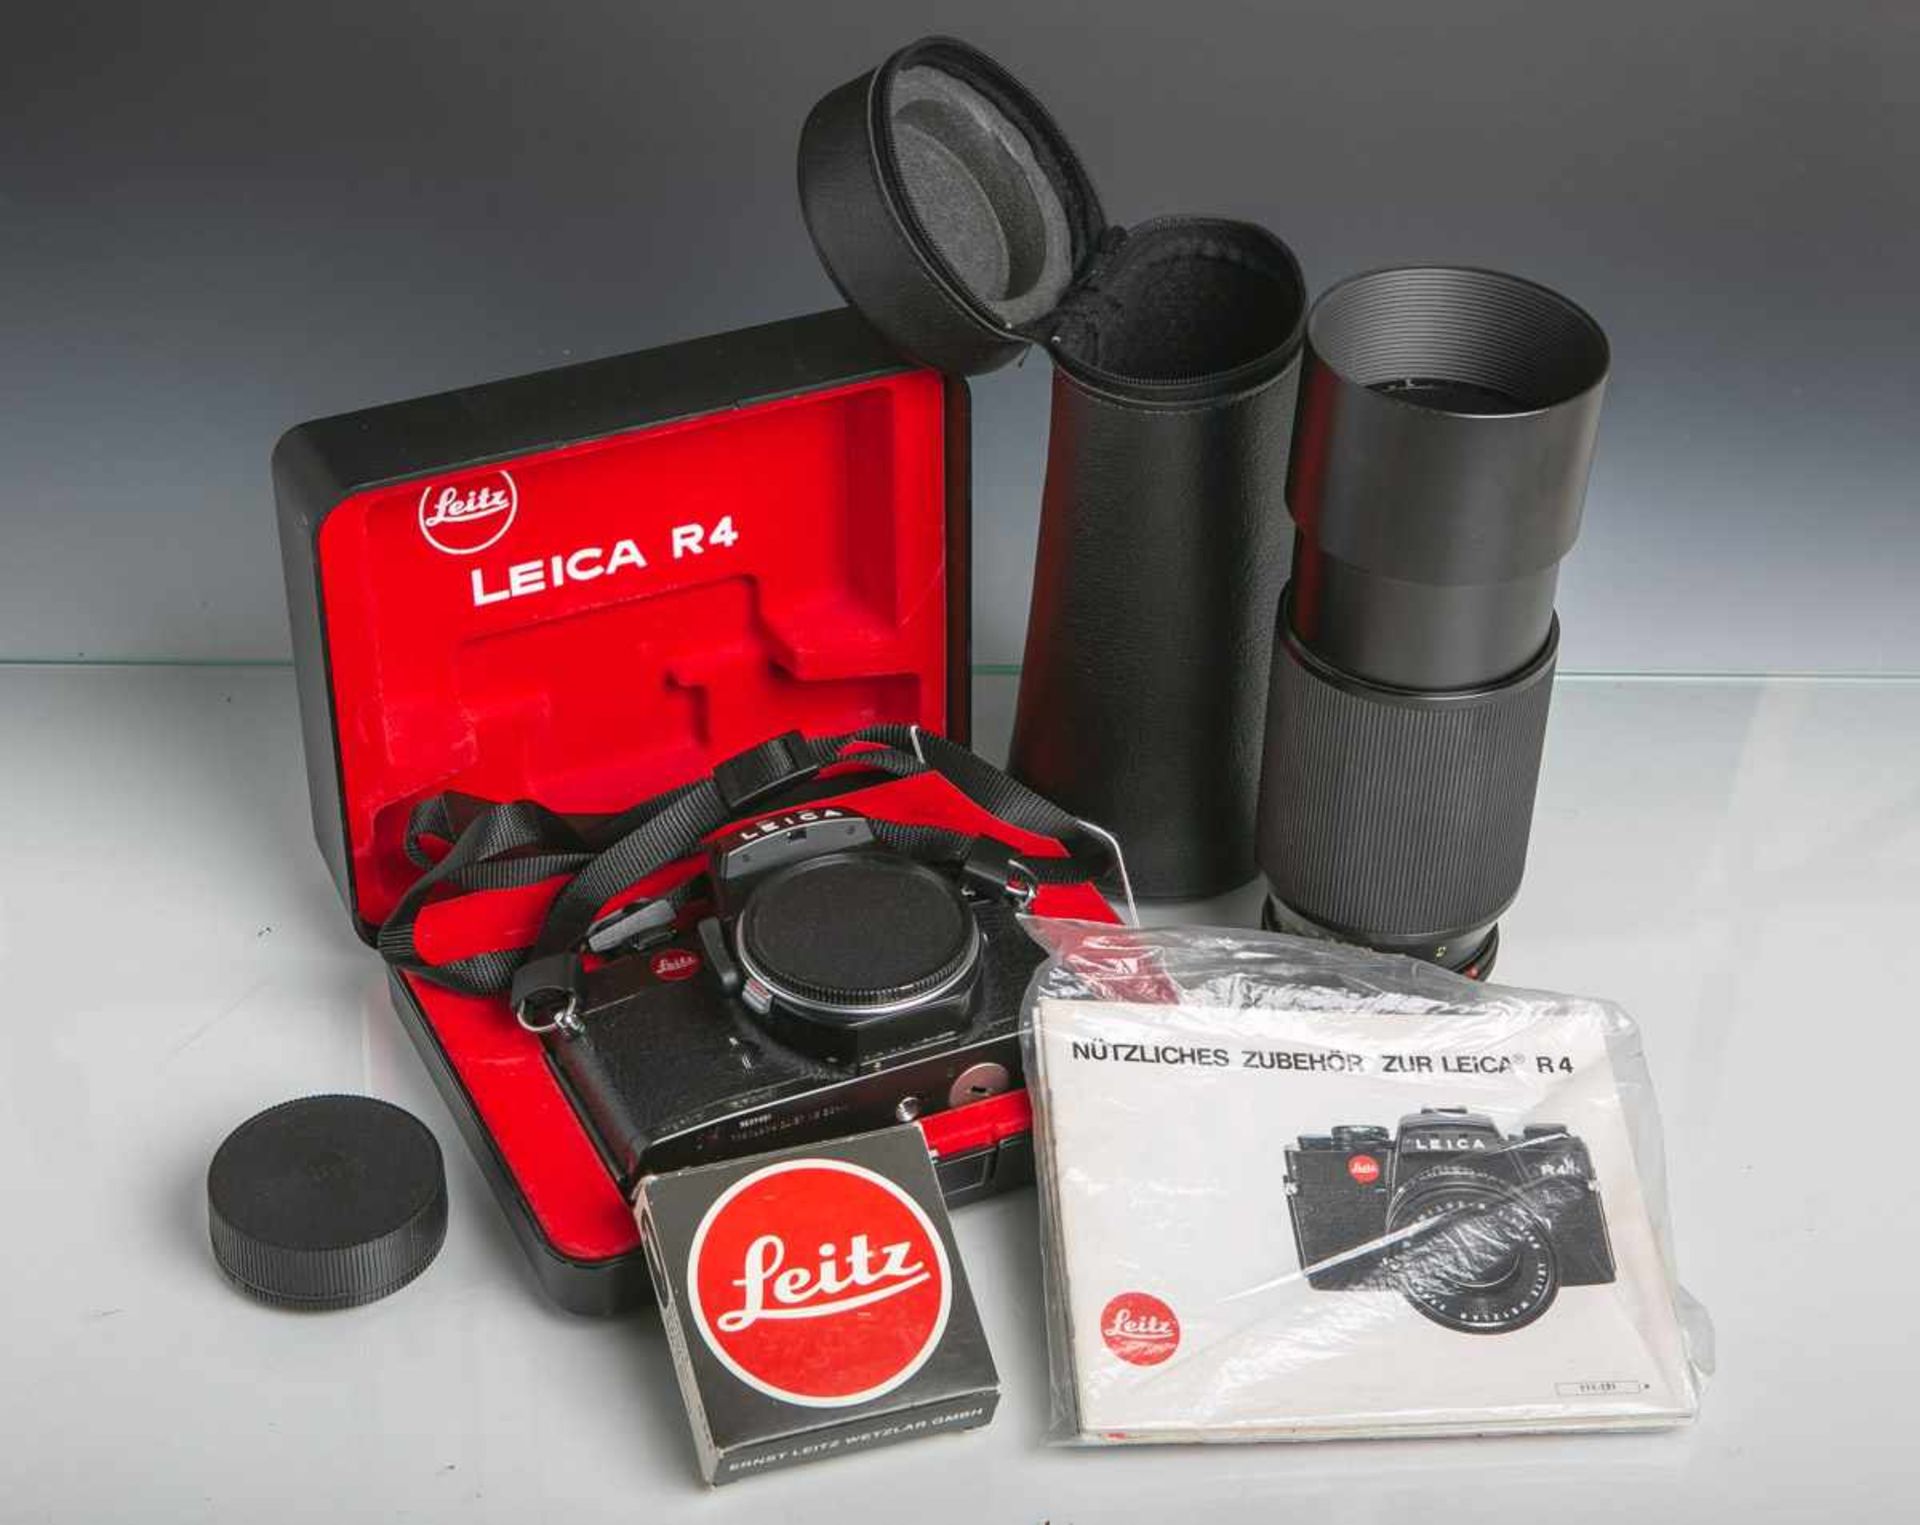 Kamera Leica R4 m. Objektiv, Gehäusenr. 1554035, Objektiv: "Leitz", Vario-Elmar-R,1:4/70-210, E60,